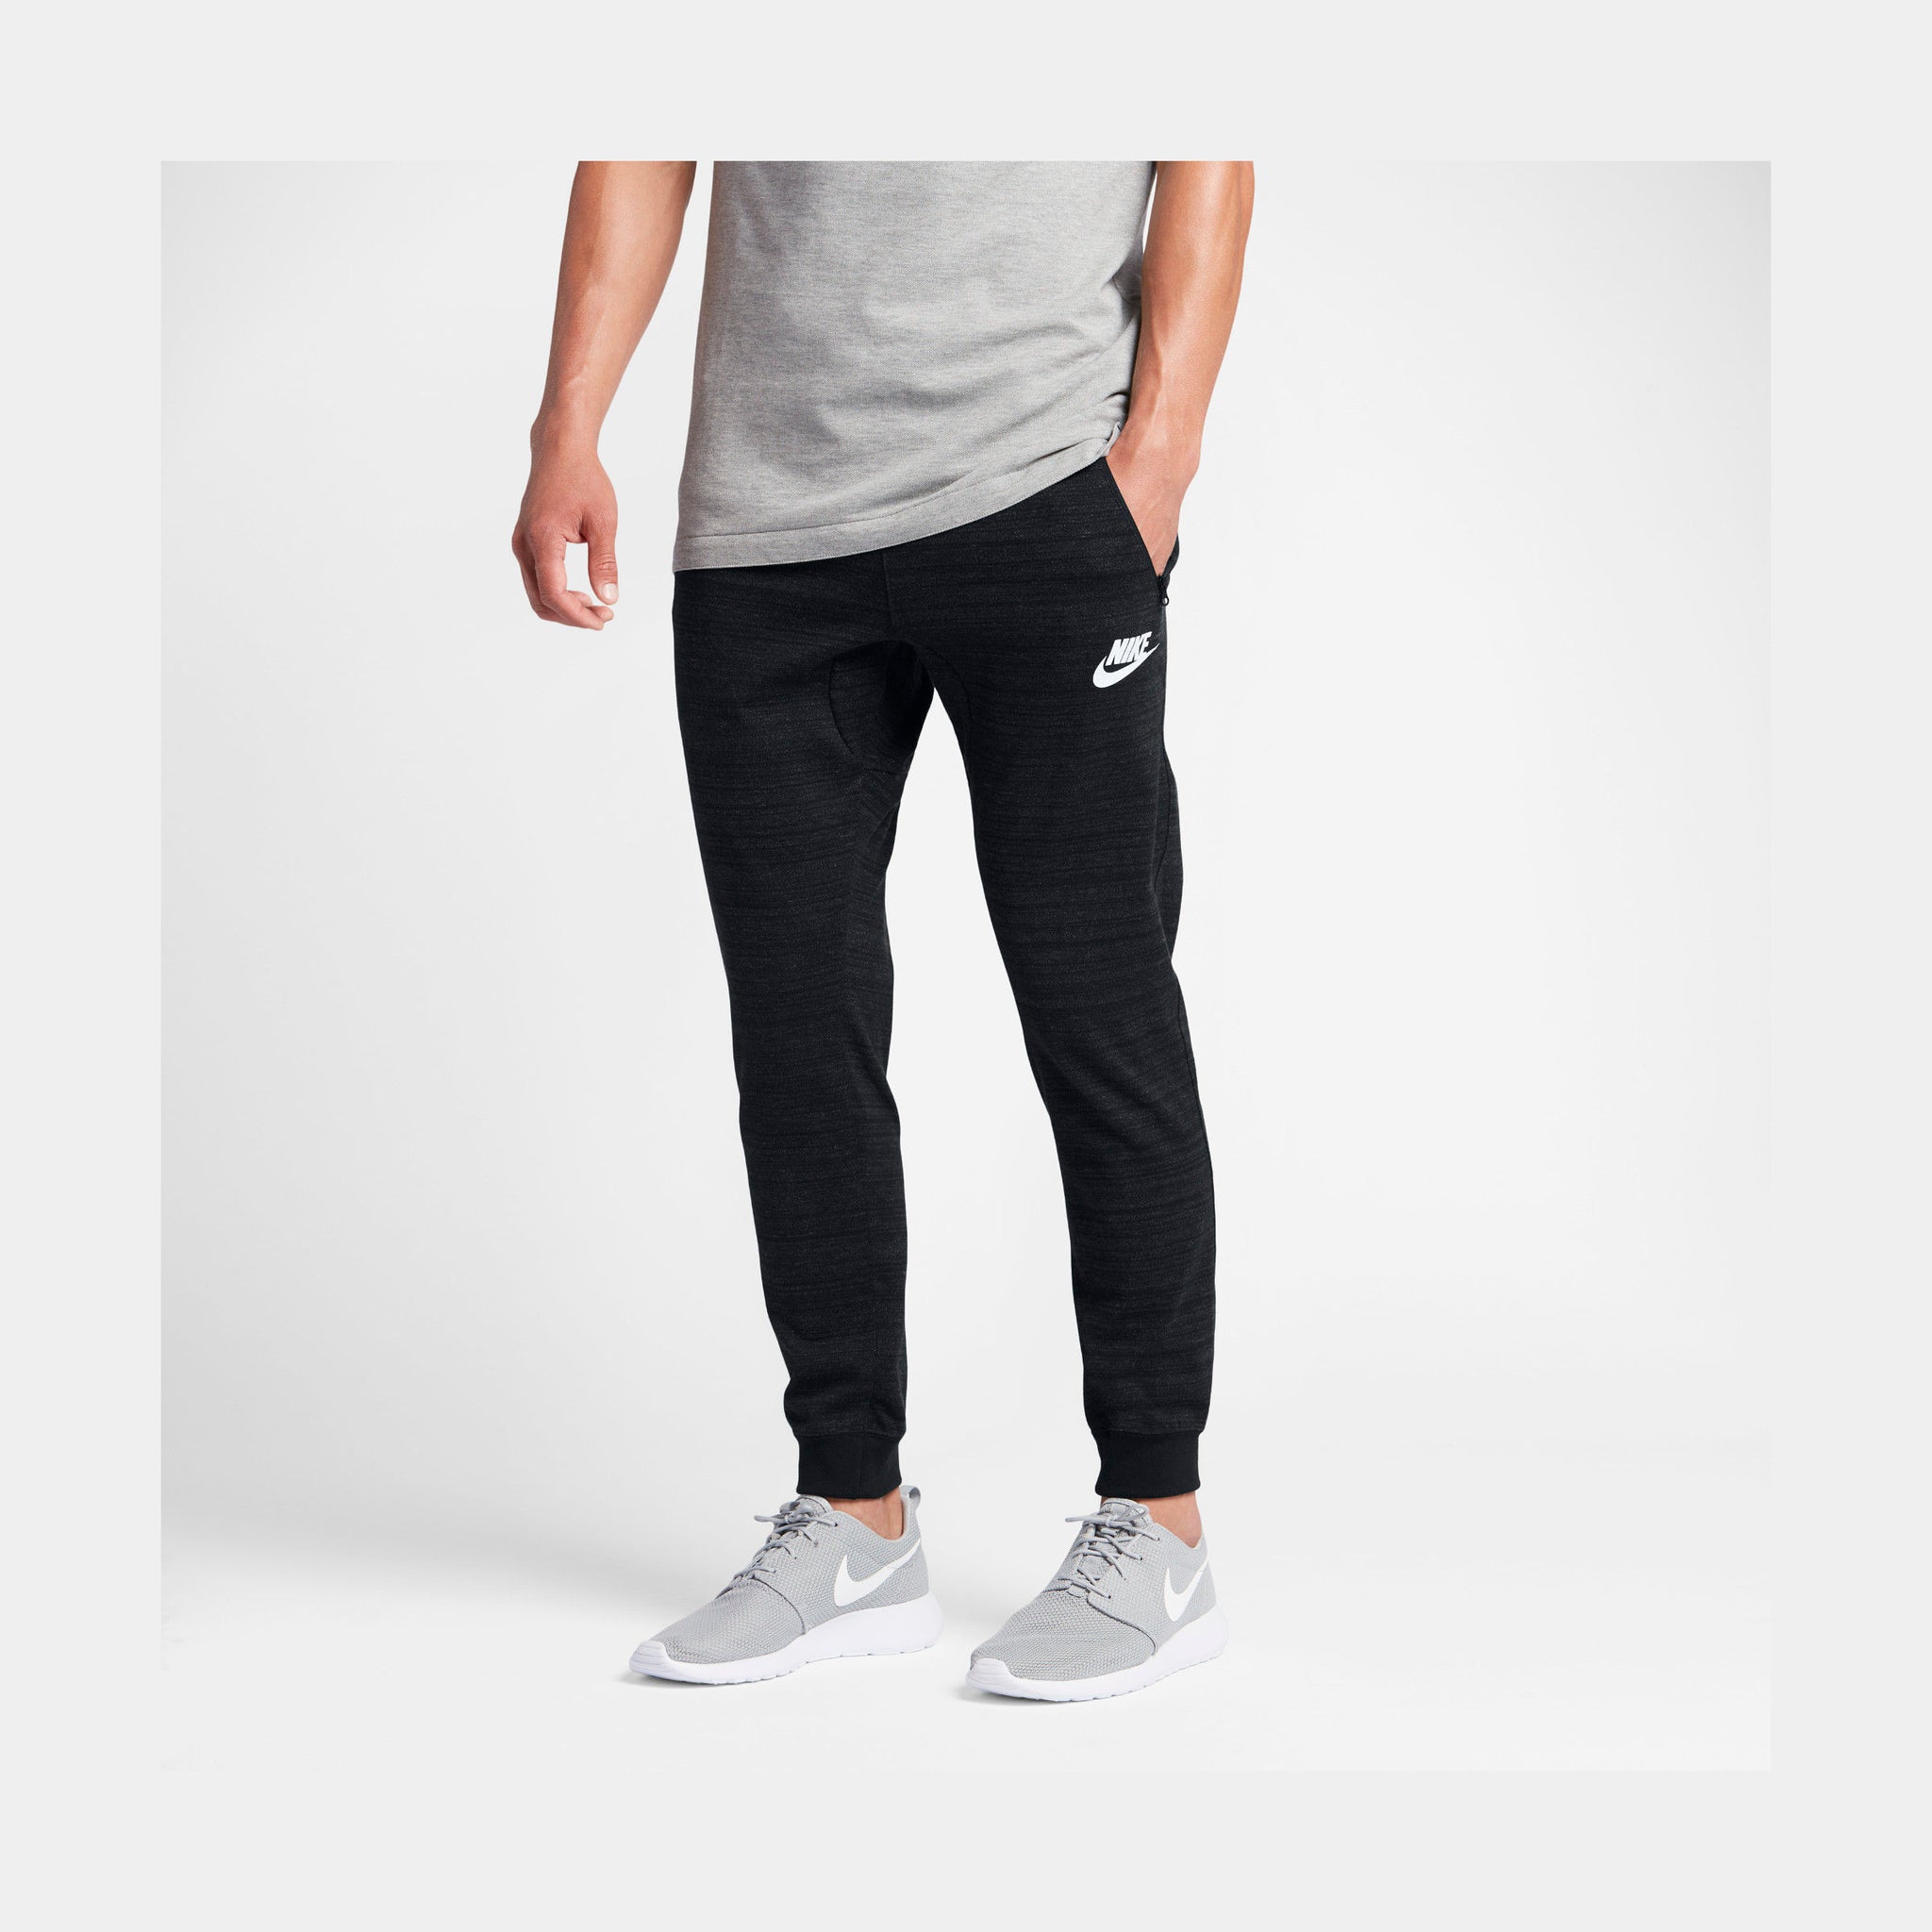 Nike Advance 15 Mens Jogger Pants 837012-010 – Shoe Palace